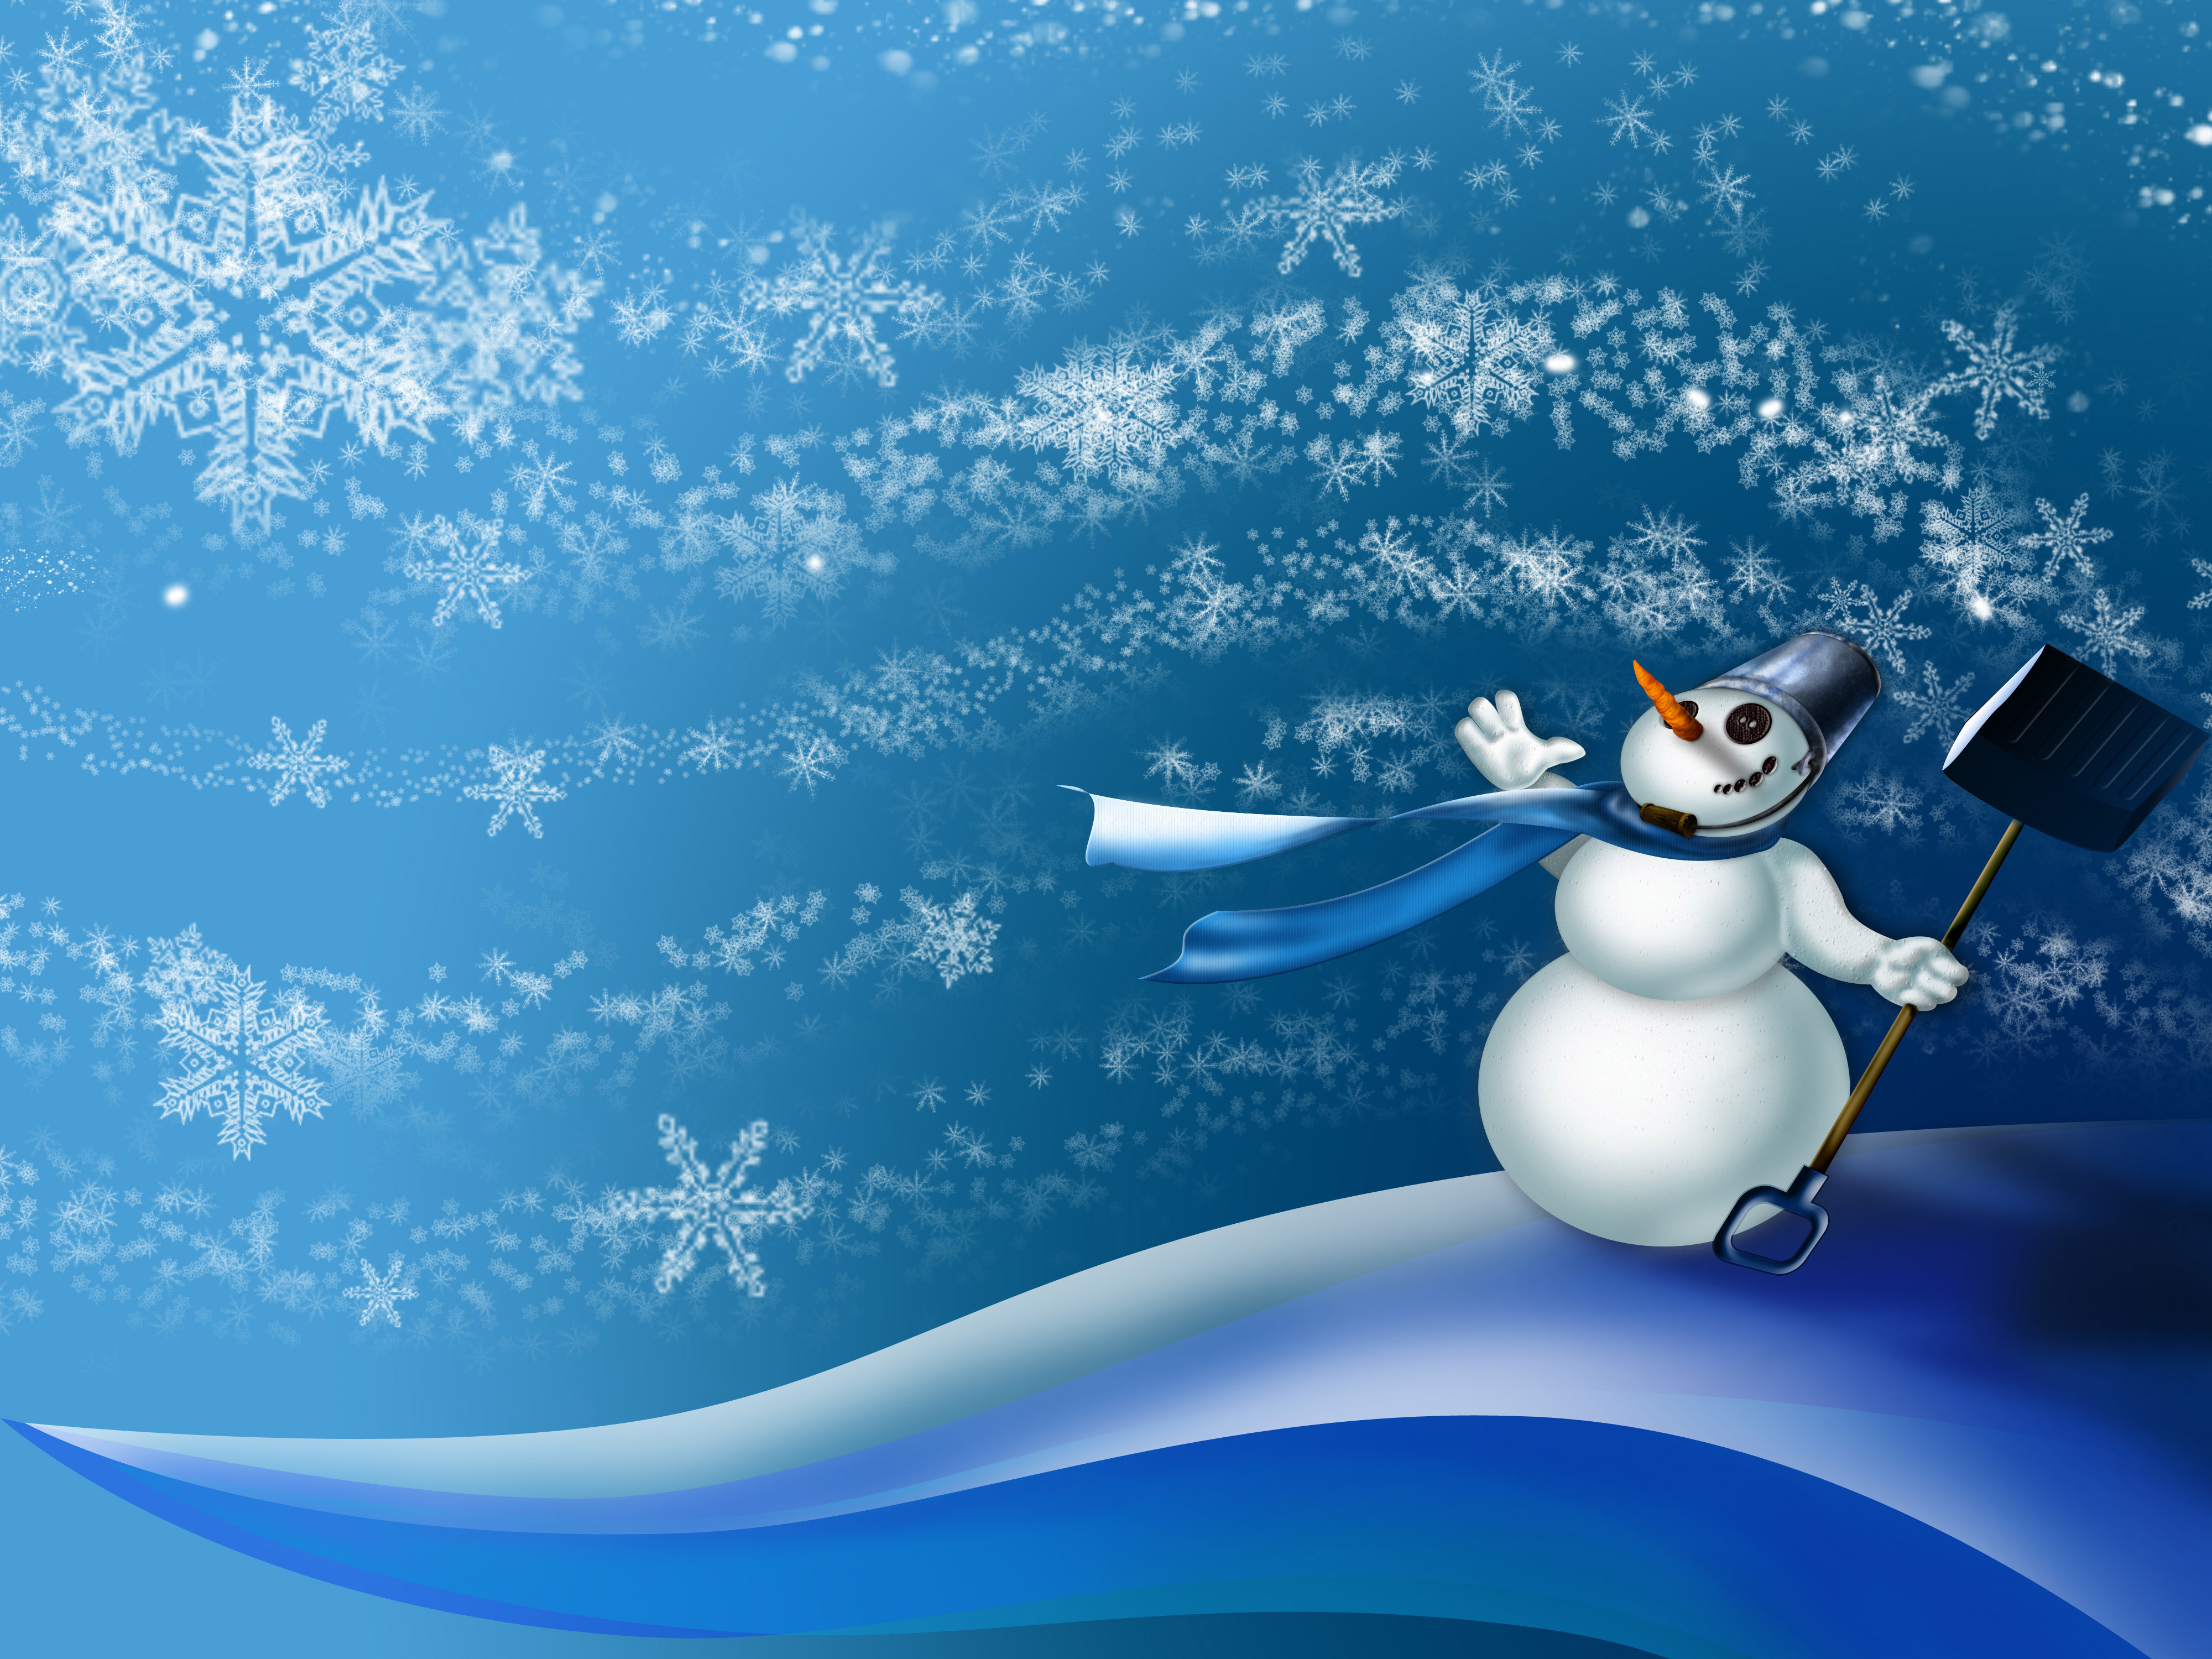 Cute Snowman wallpaper   ForWallpapercom